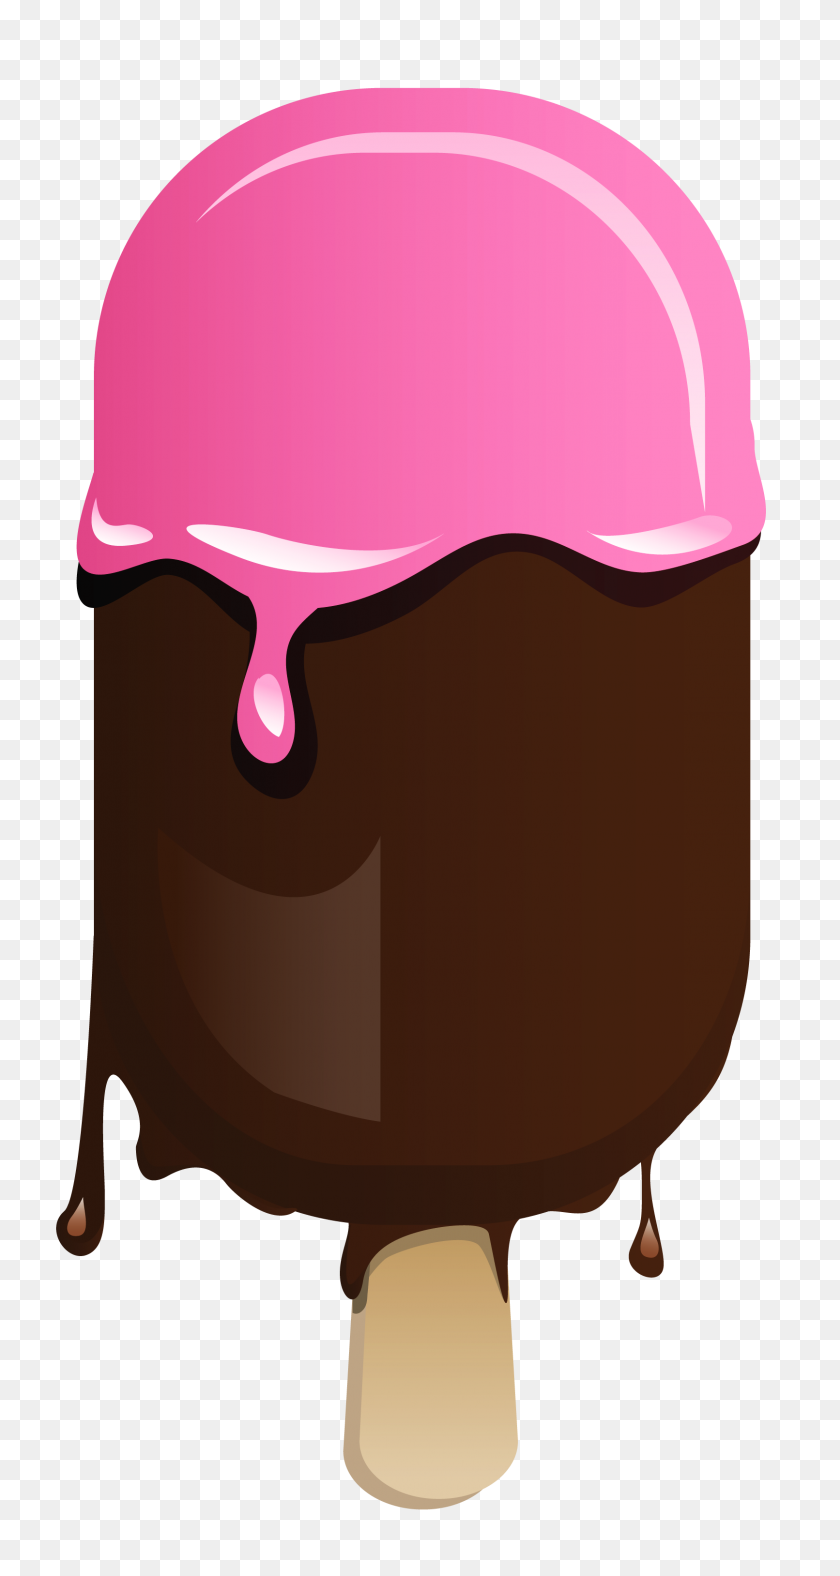 Transparent Ice Cream Stick - Ice Cream Clipart PNG